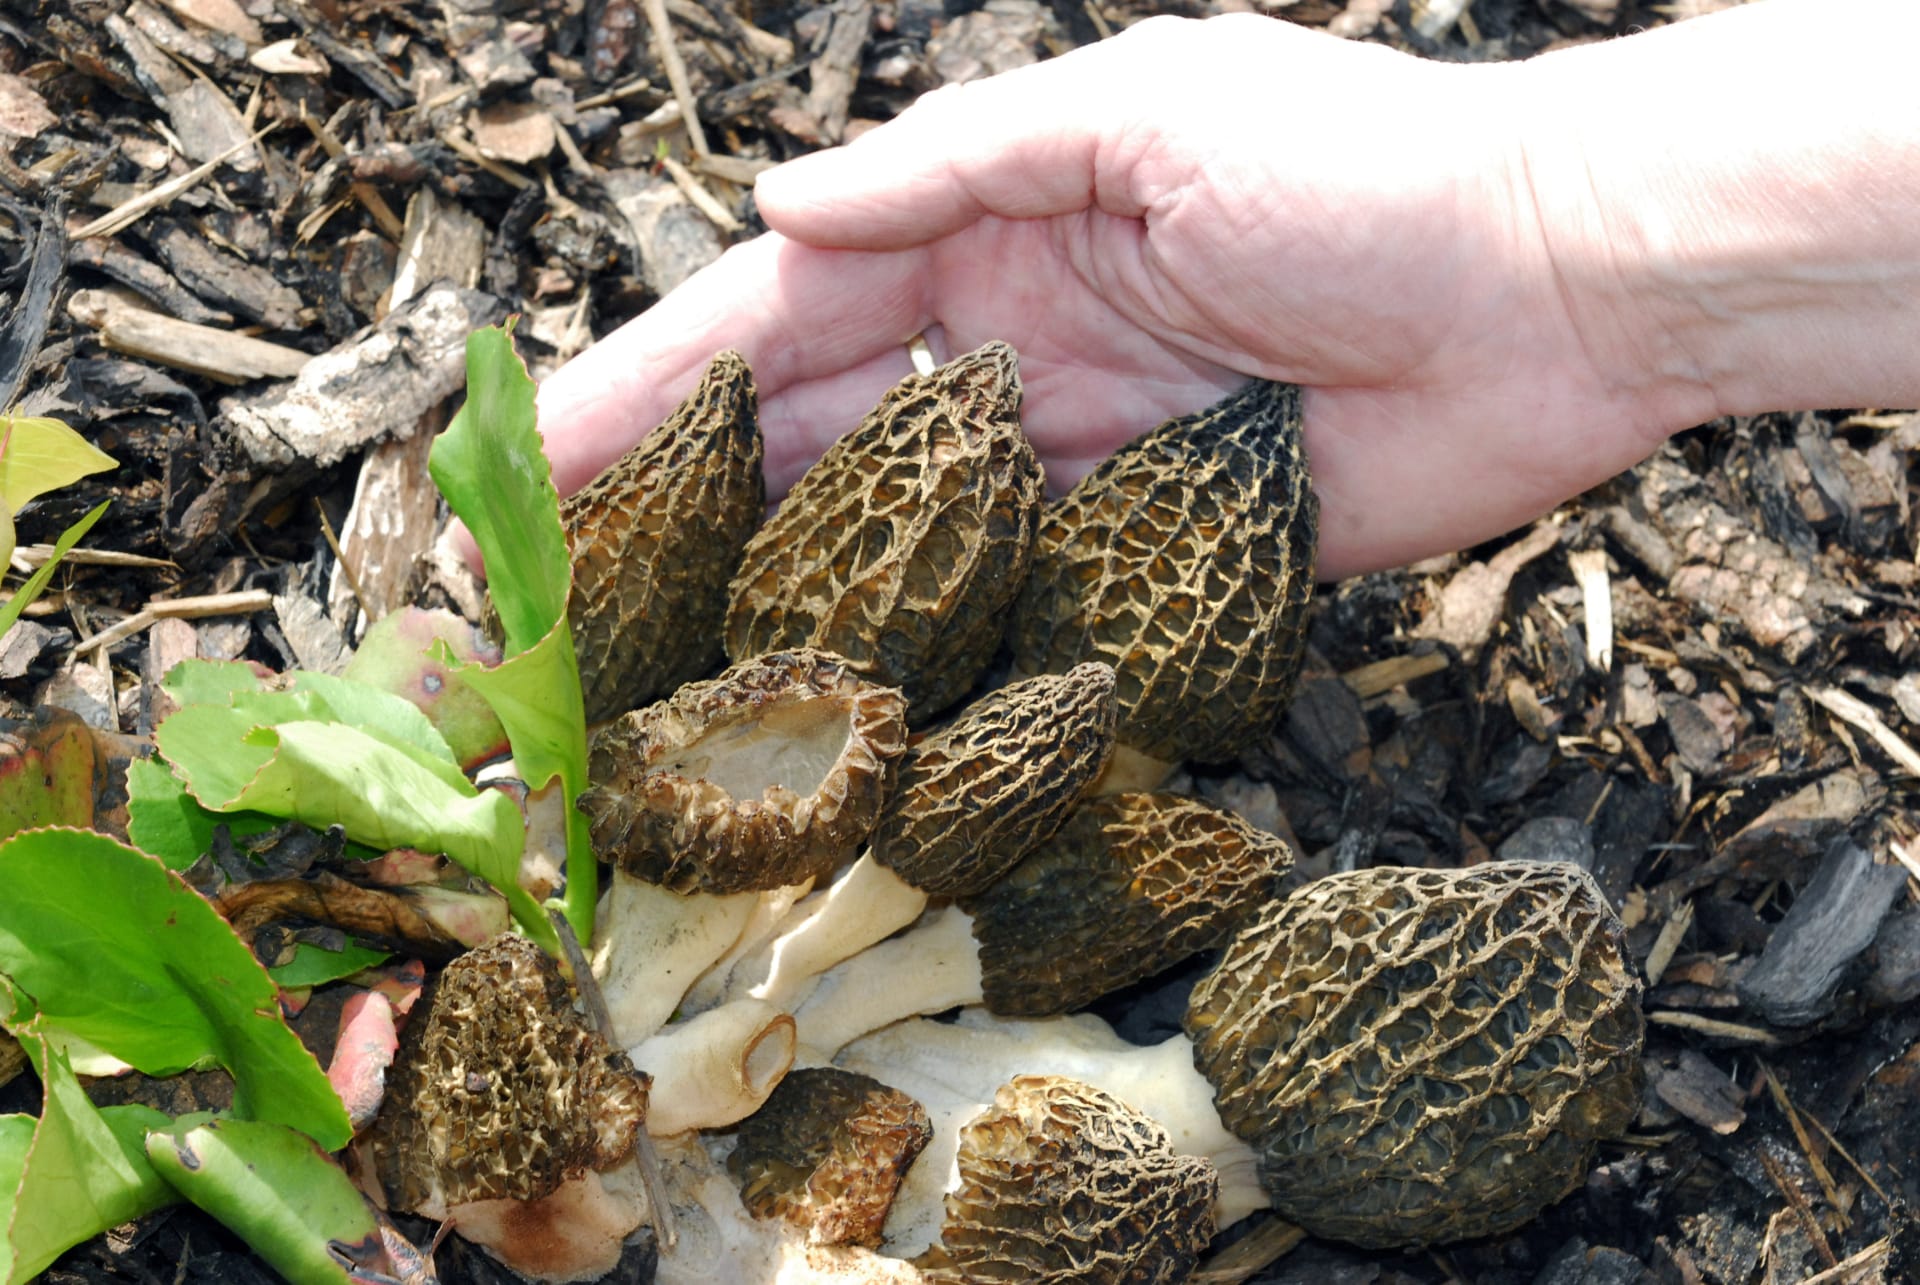 Máme dobrou zprávu pro všechny houbaře – v Česku začala houbová sezóna.